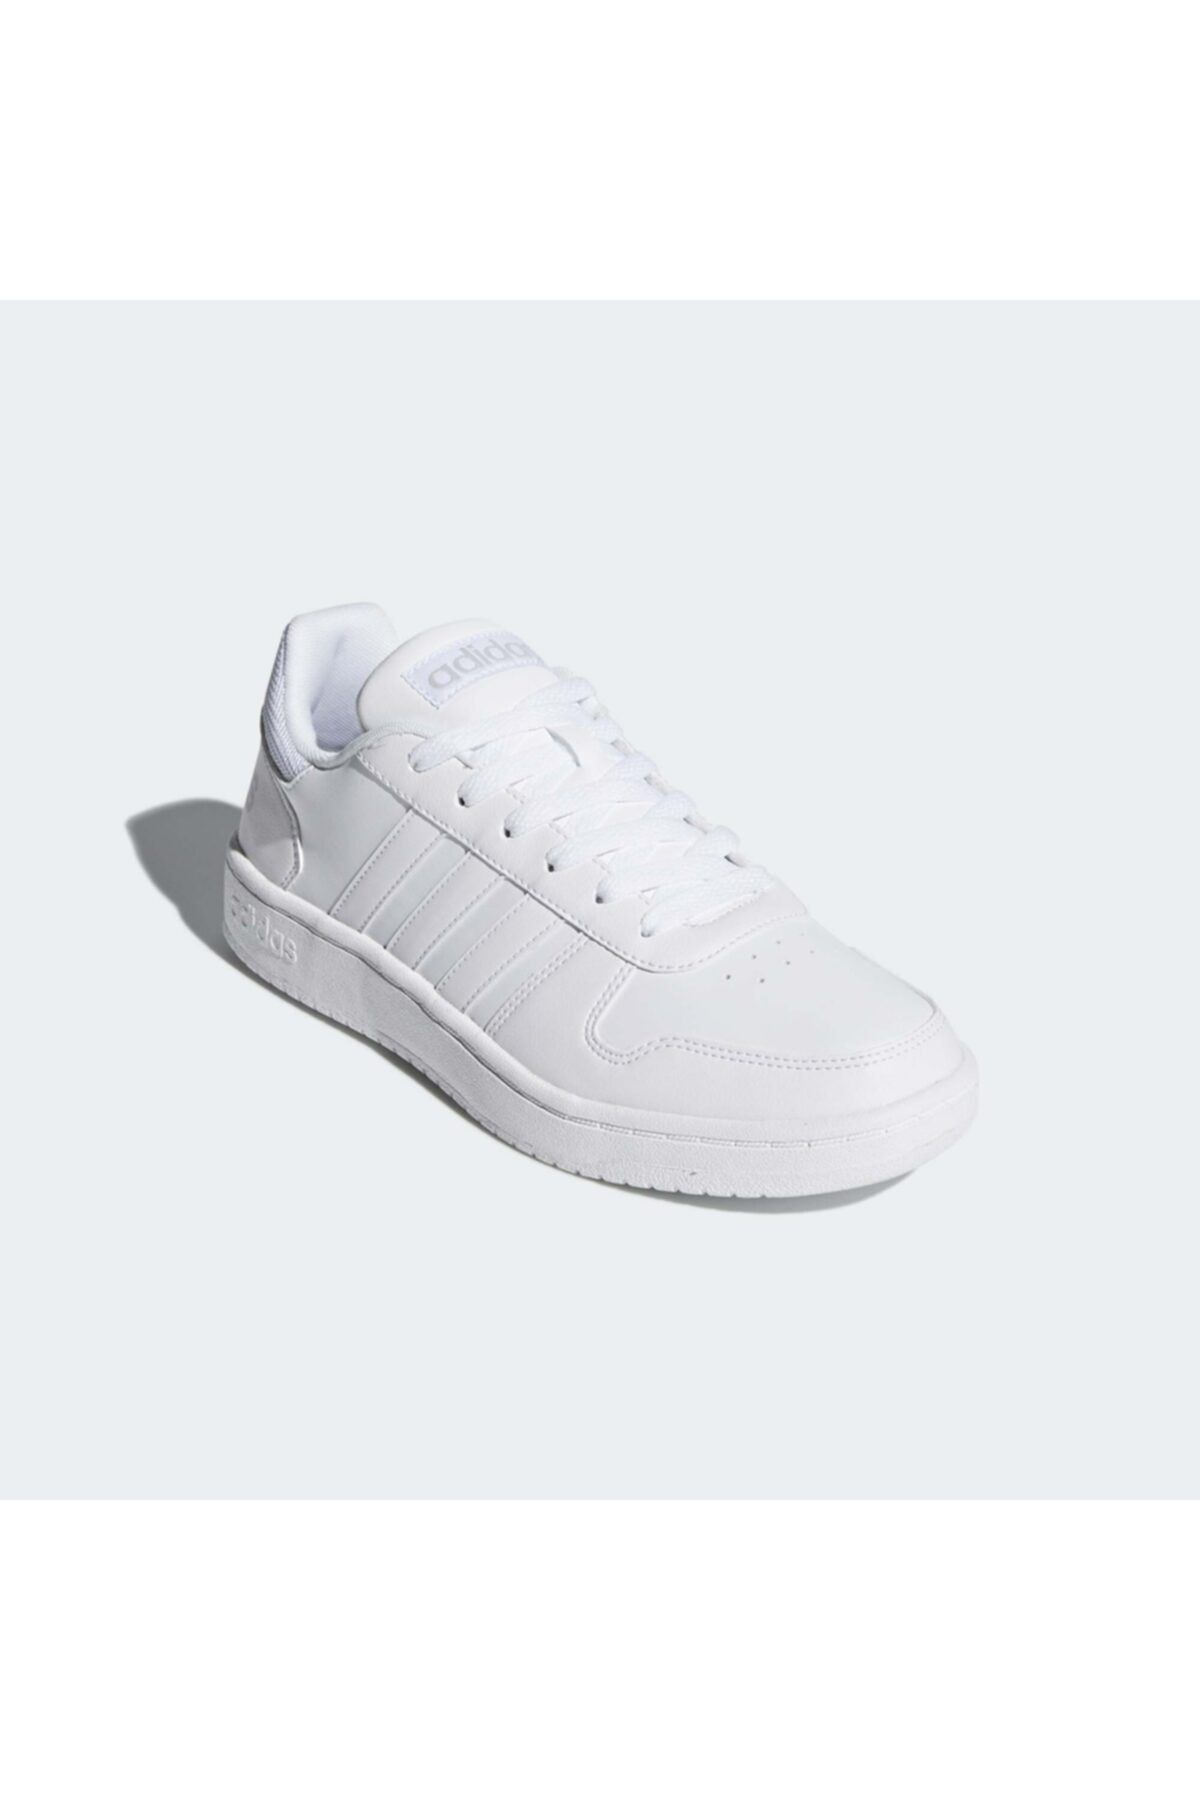 Vs Hoops 2.0 Beyaz Spor Ayakkabı (DB1085)